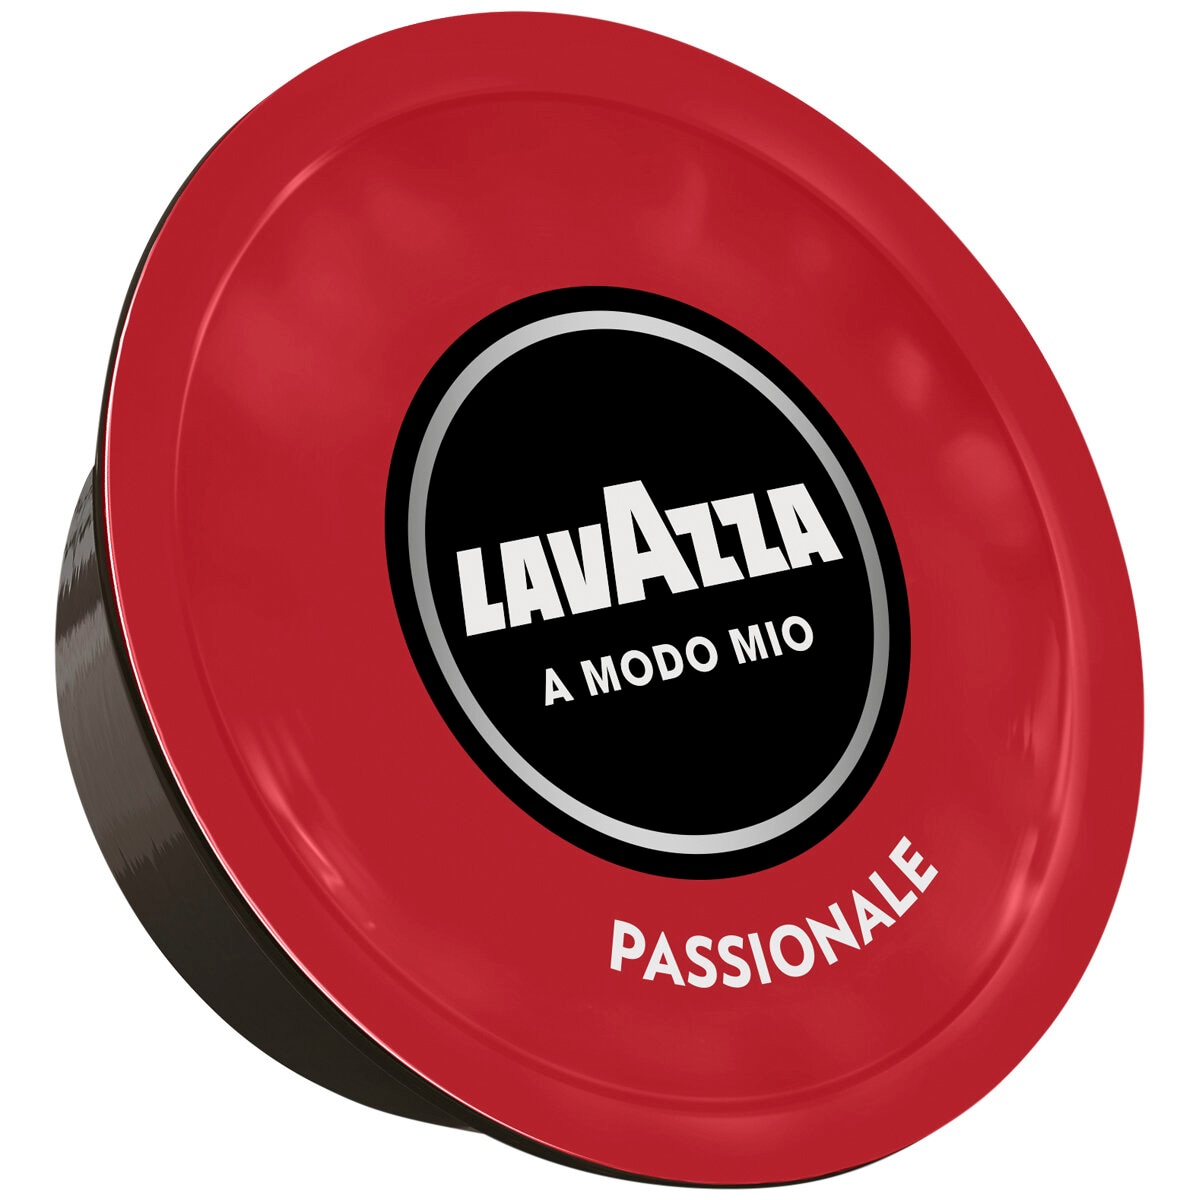 Lavazza A Modo Mio Passionale Coffee Capsules 96 Pack